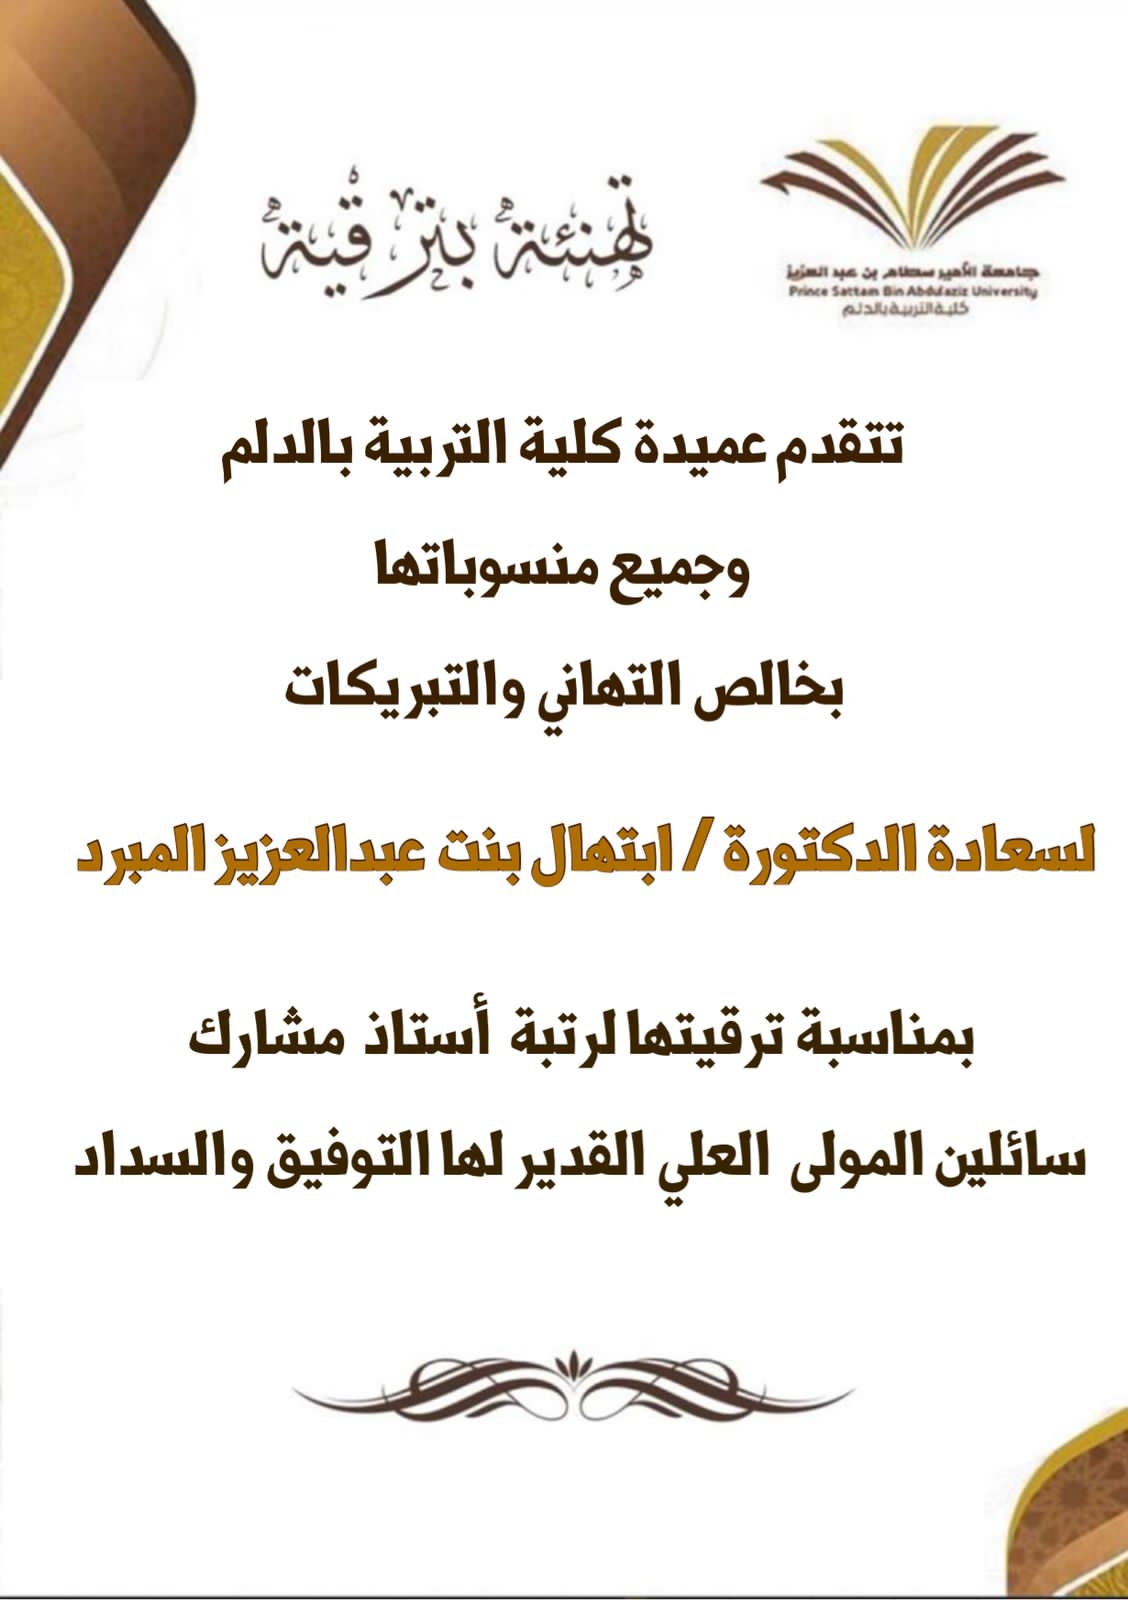 Congratulations to Dr Ibtihal Al Mobrad